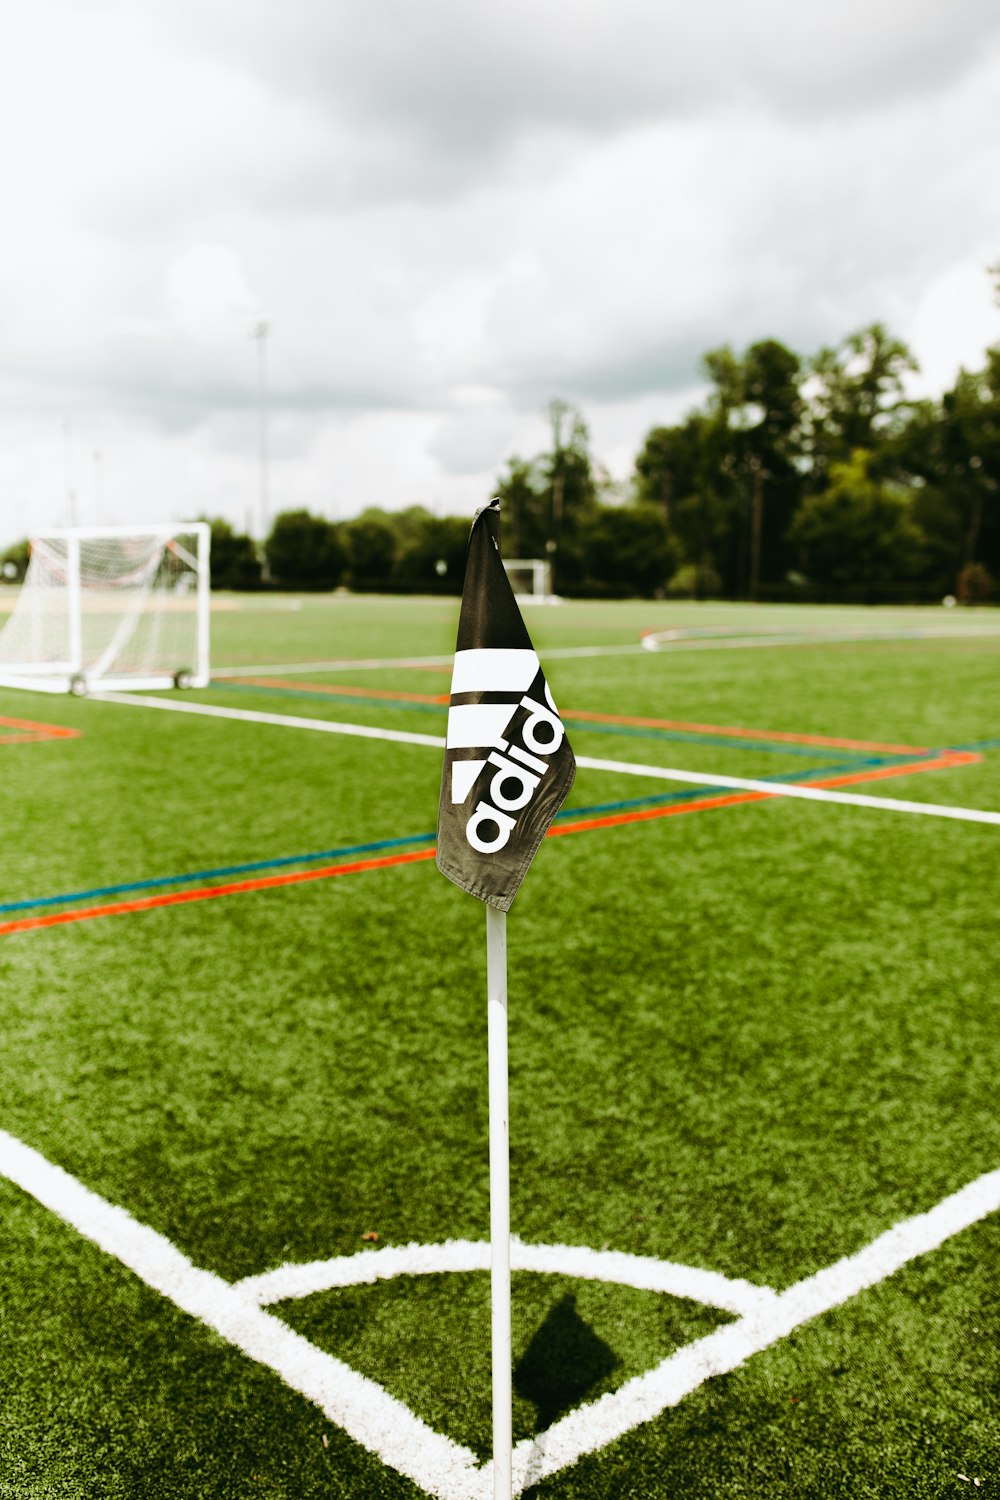 adidas flag on pole on soccer field